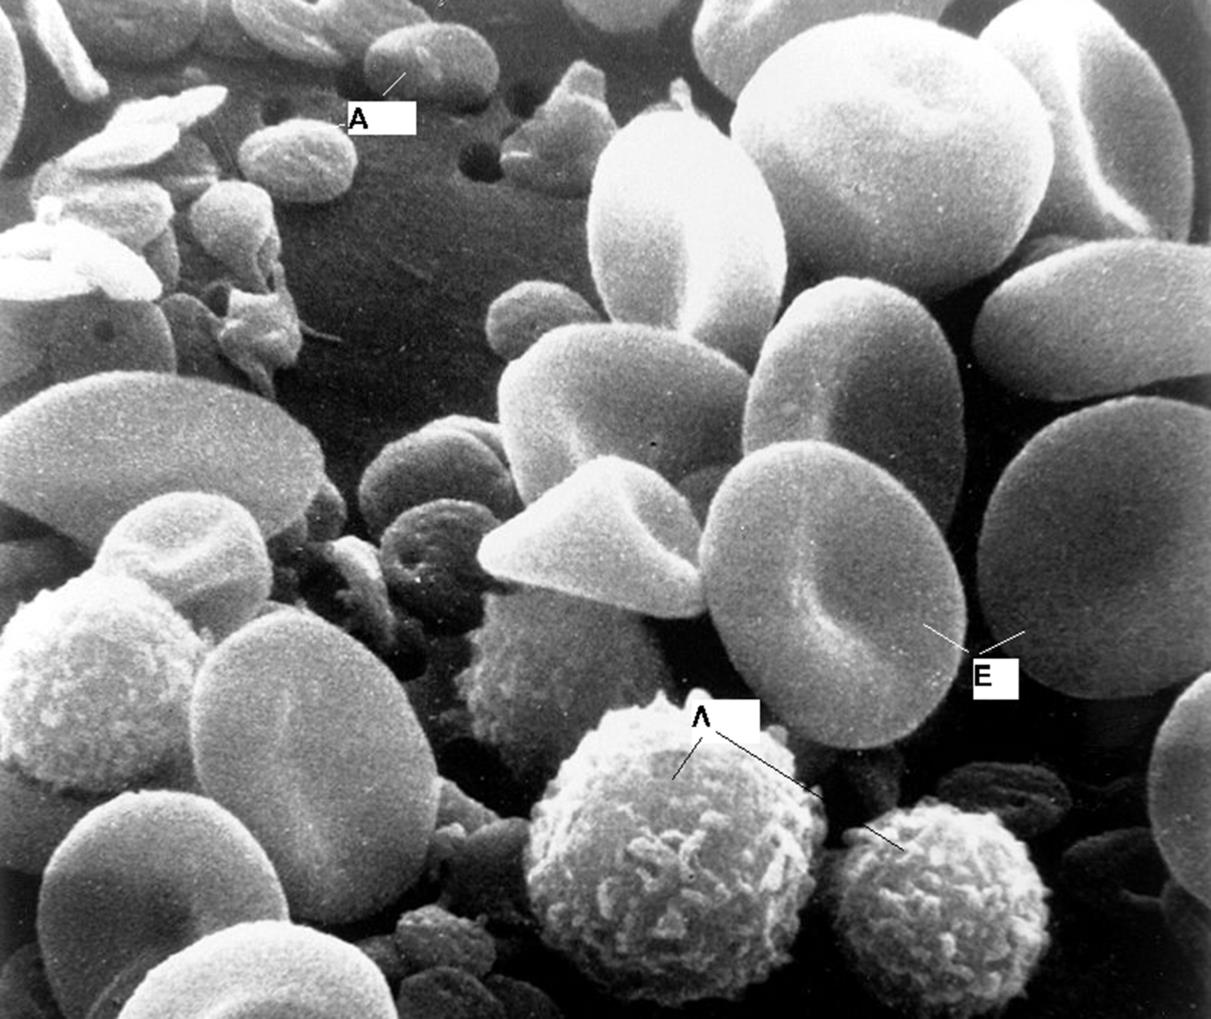 Τα αιμοπετάλια είναι κυτταρικά θραύσματα, μήκους 2-4 μm, τα οποία αποτελούν λιγότερο από το 1% του πλήρους αίματος. Αριθμούν 250.000-400.000 ανά κυβικό χιλιοστό αίματος.